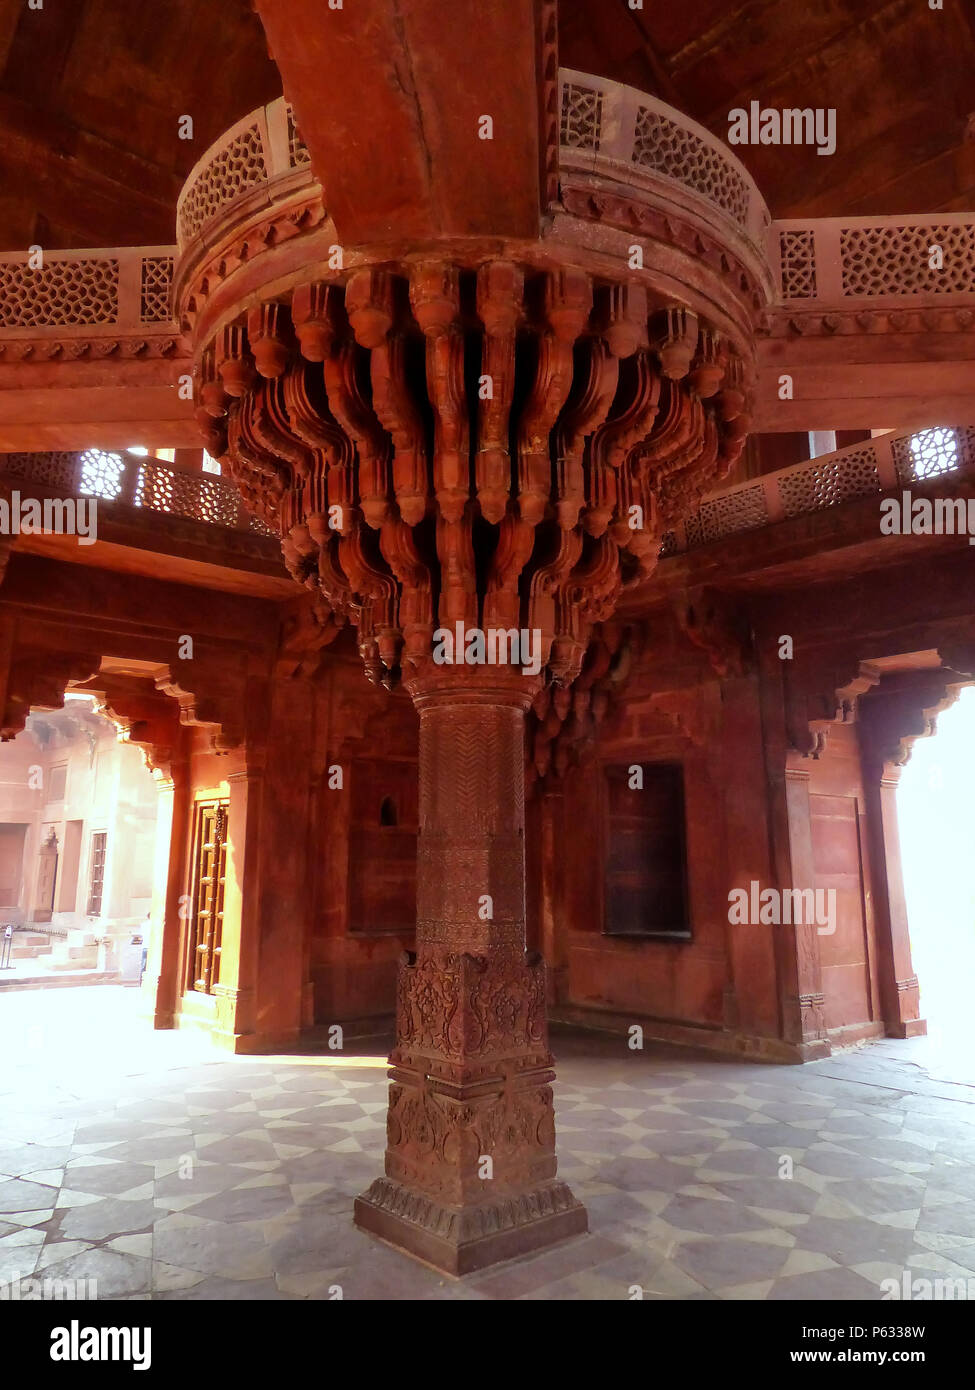 Innenraum der Diwan-I-Khas (Halle des privaten Publikum) in Fatehpur Sikri, Uttar Pradesh, Indien. Fatehpur Sikri ist einer der am besten erhaltenen Beispiele für Stockfoto